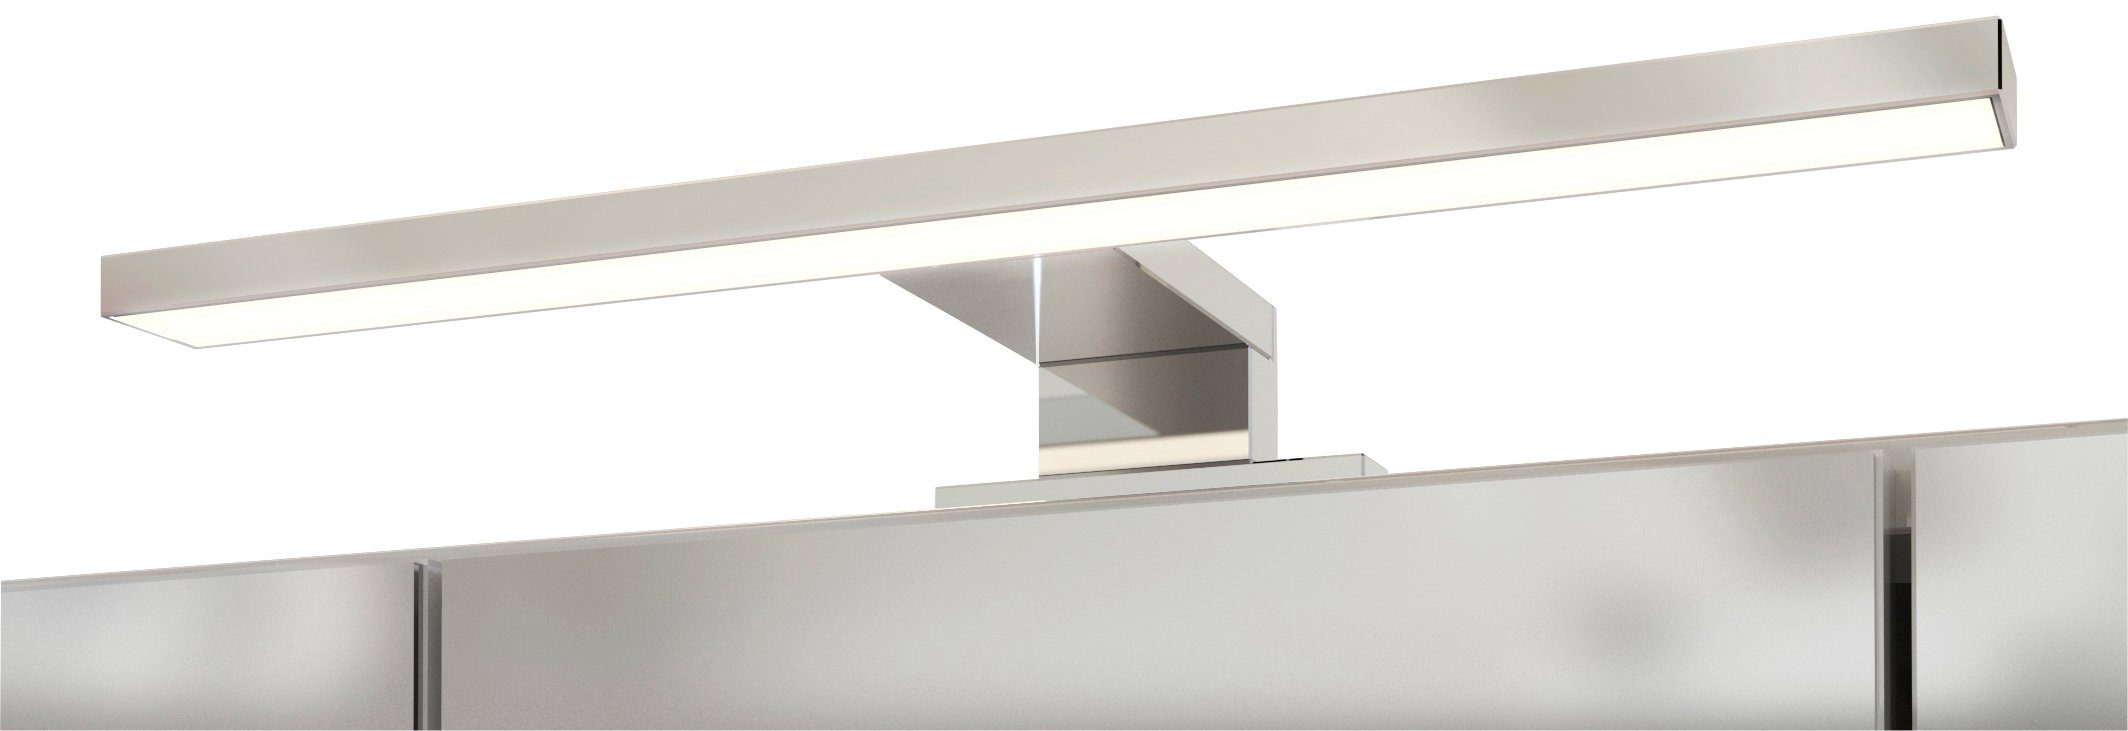 HELD MÖBEL Spiegelschrank Livorno Inklusive LED-Beleuchtung | weiß weiß/weiß